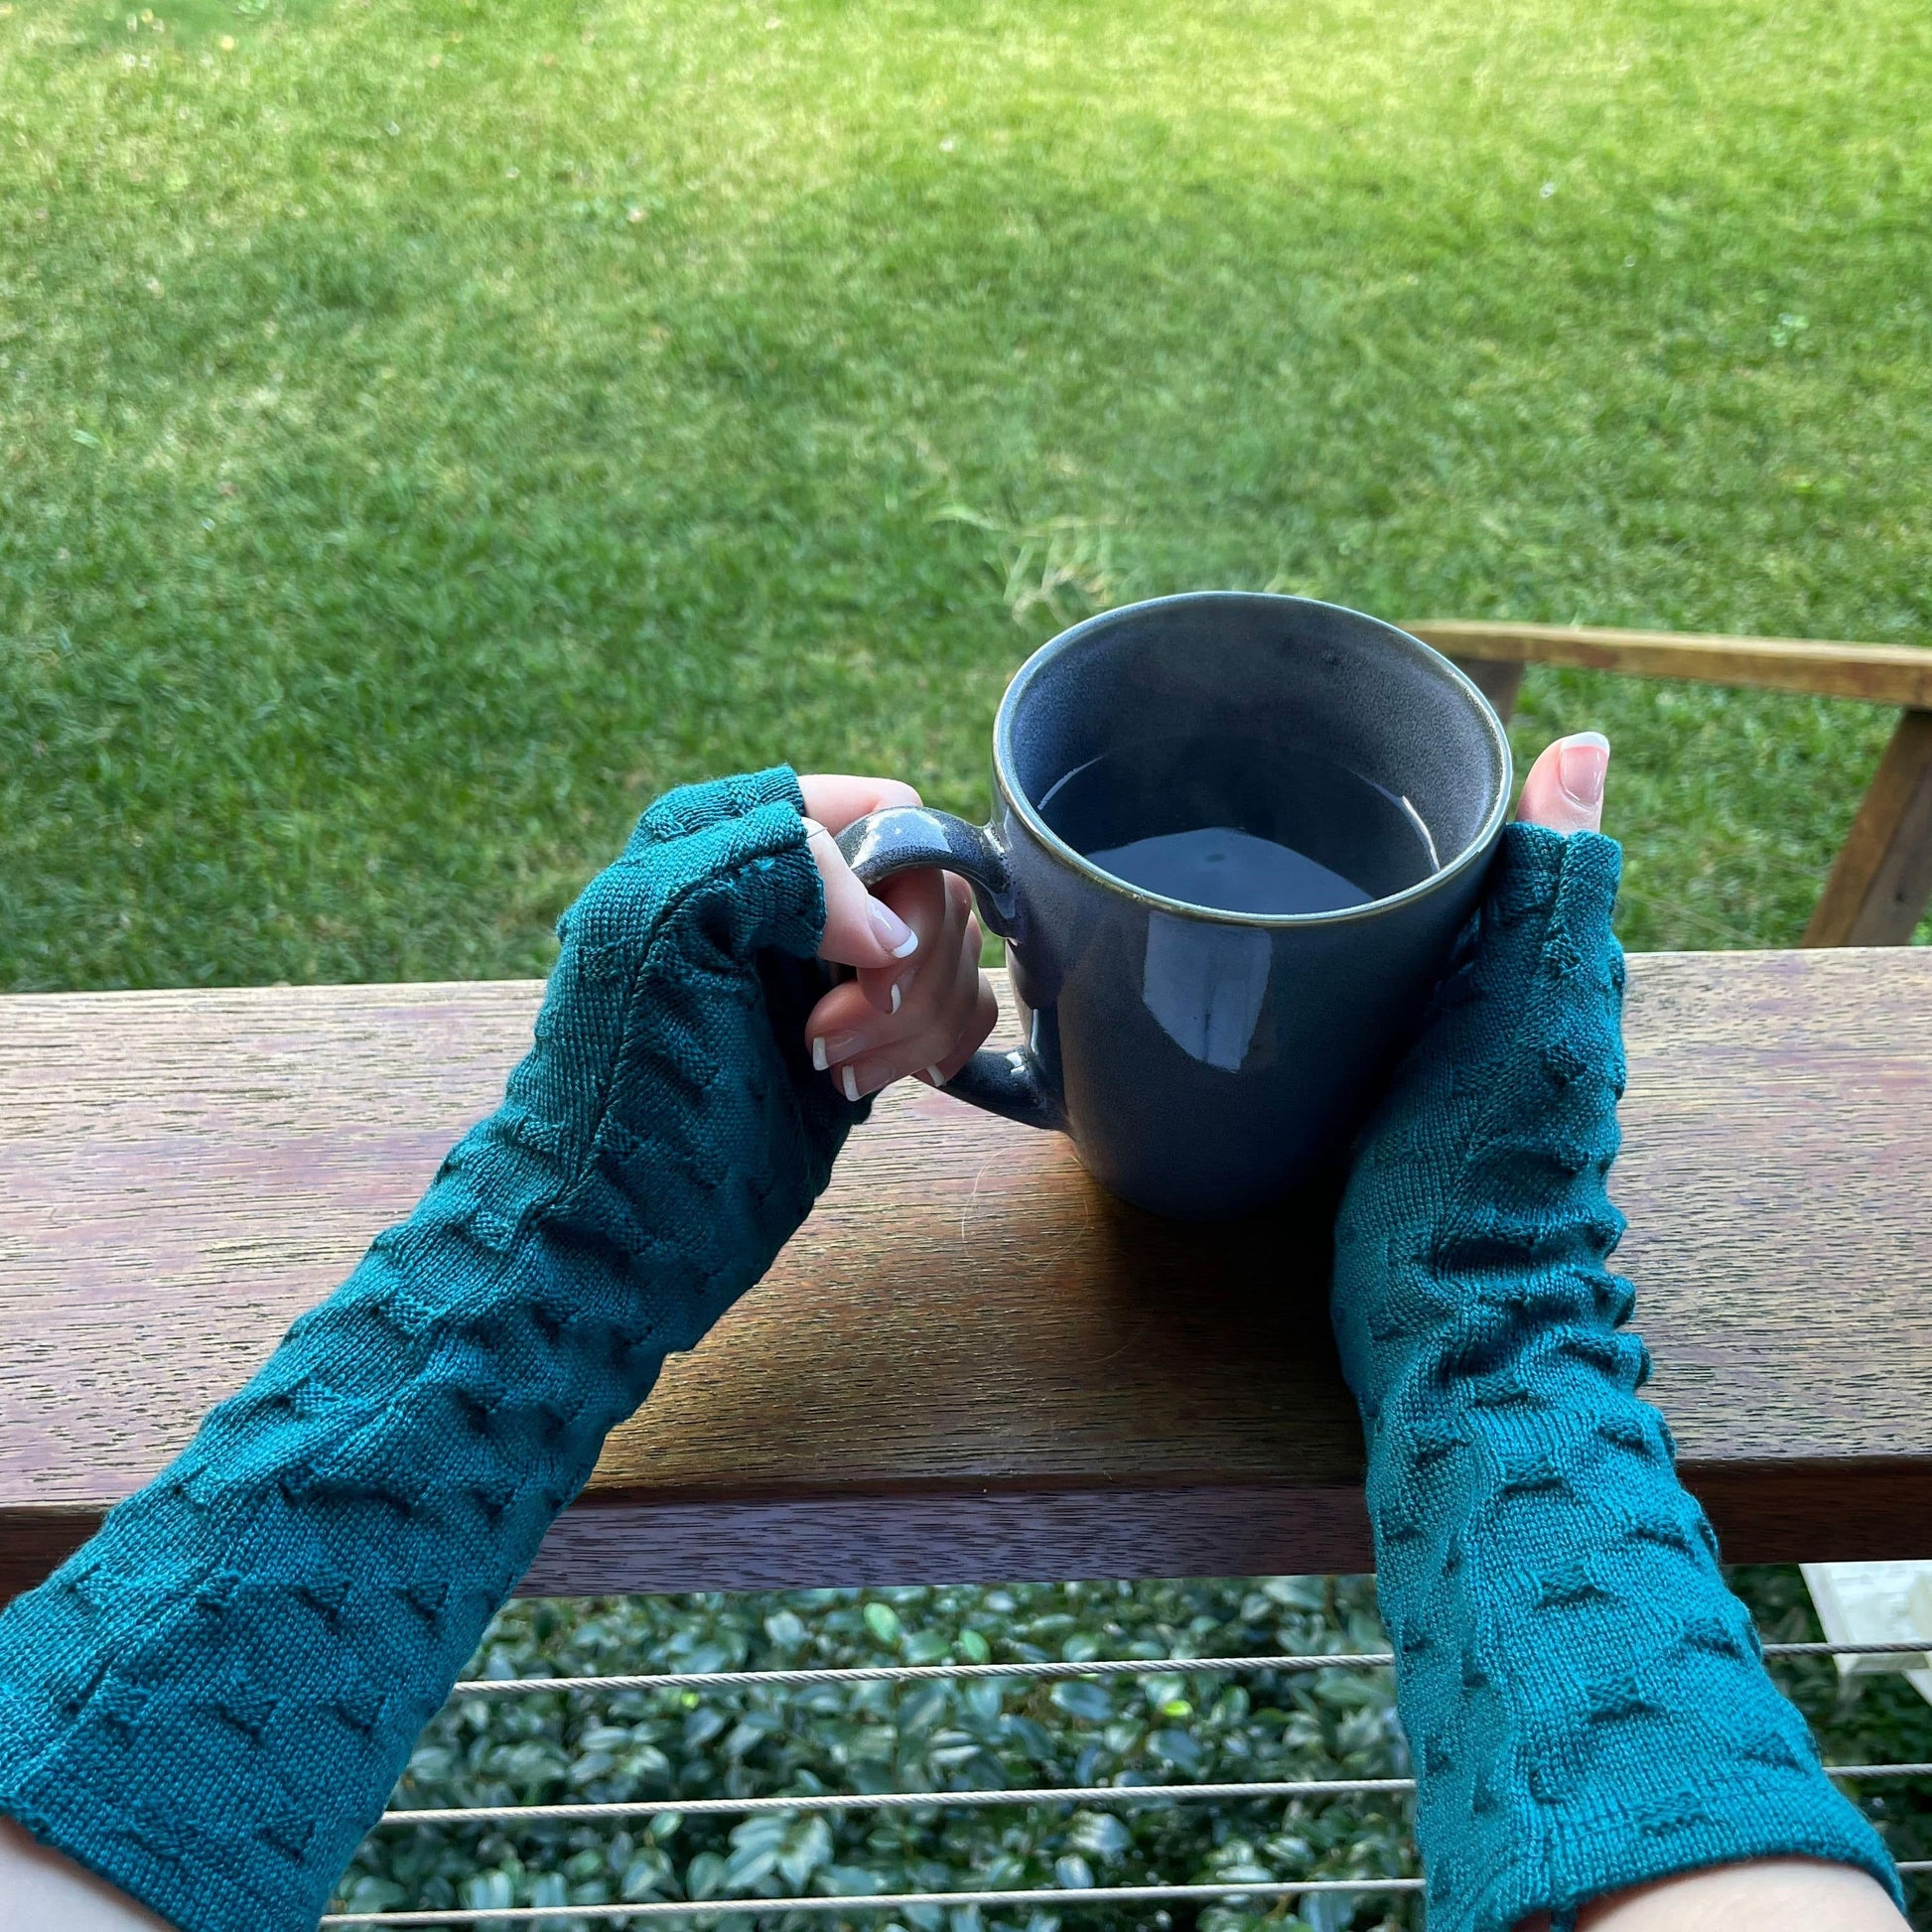 Fingerless merino gloves in teal textured knit.